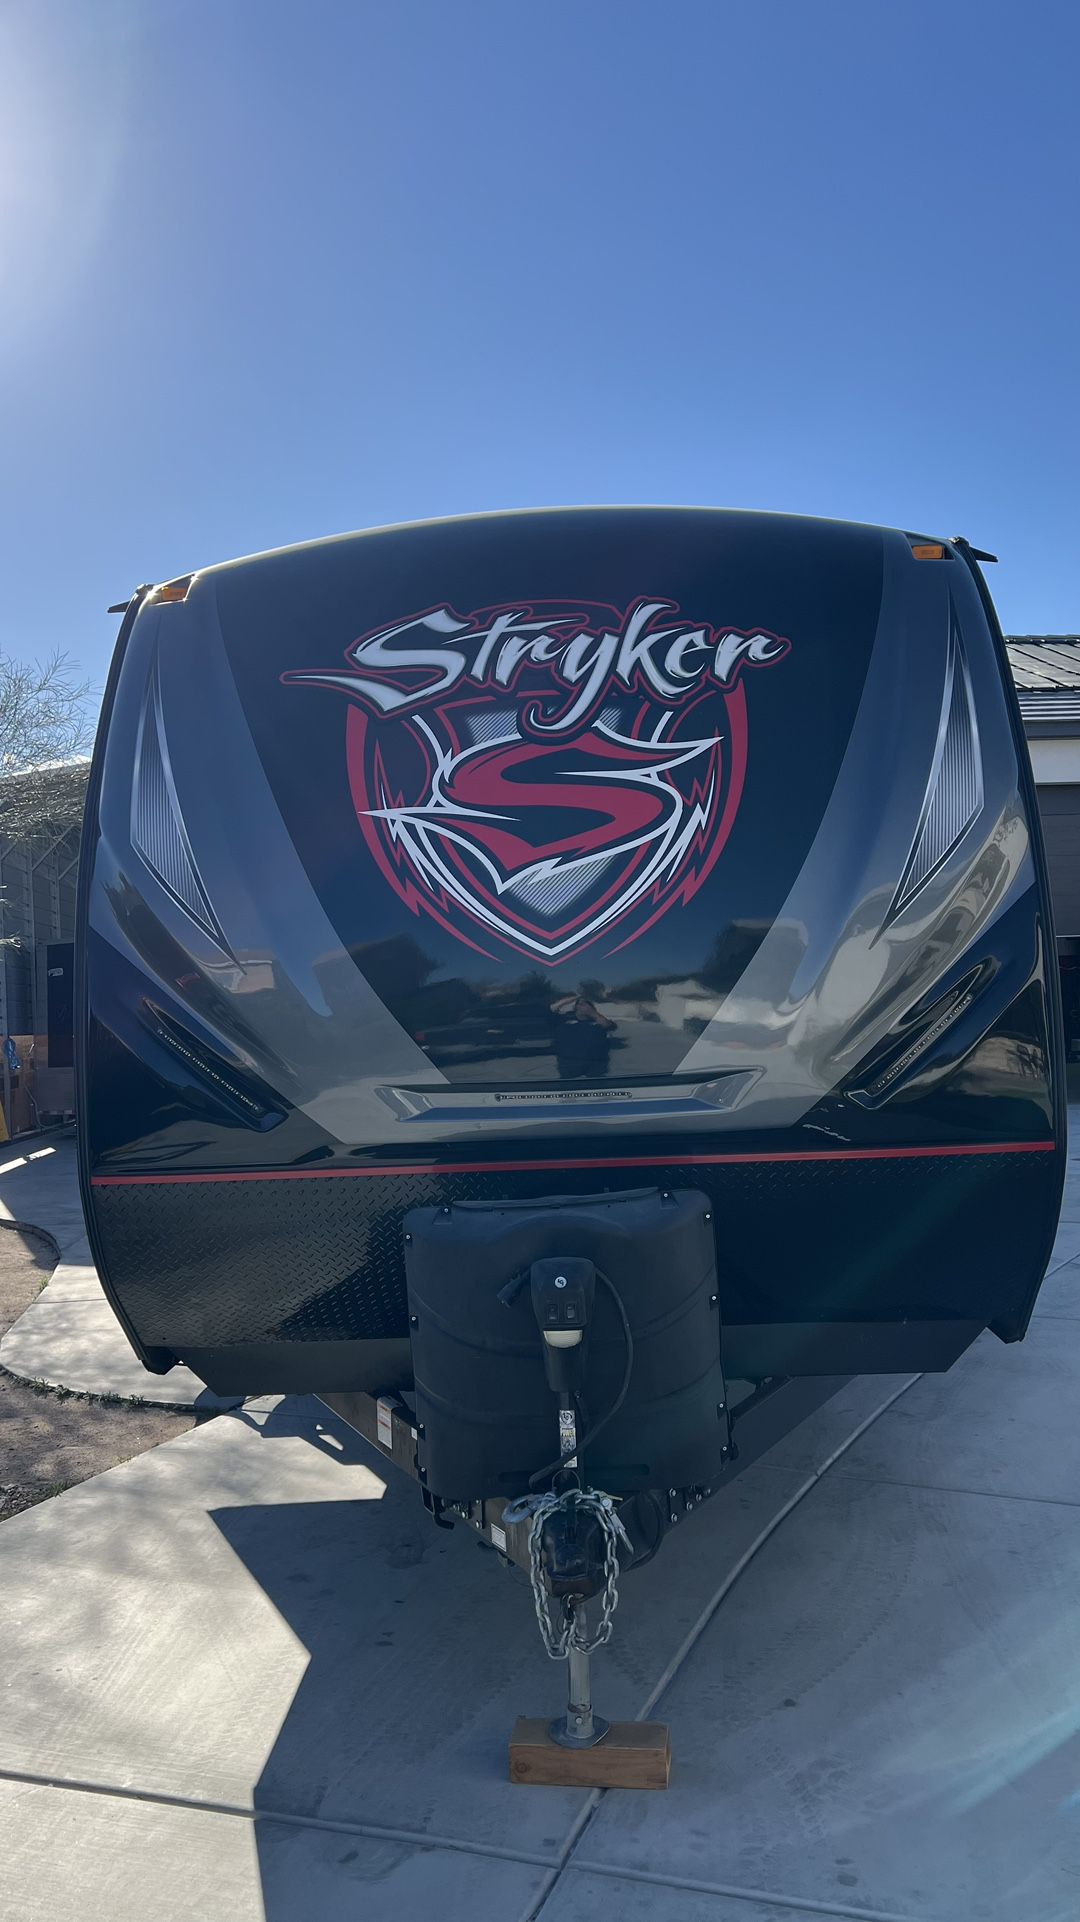 2021 STG3112 model Stryker